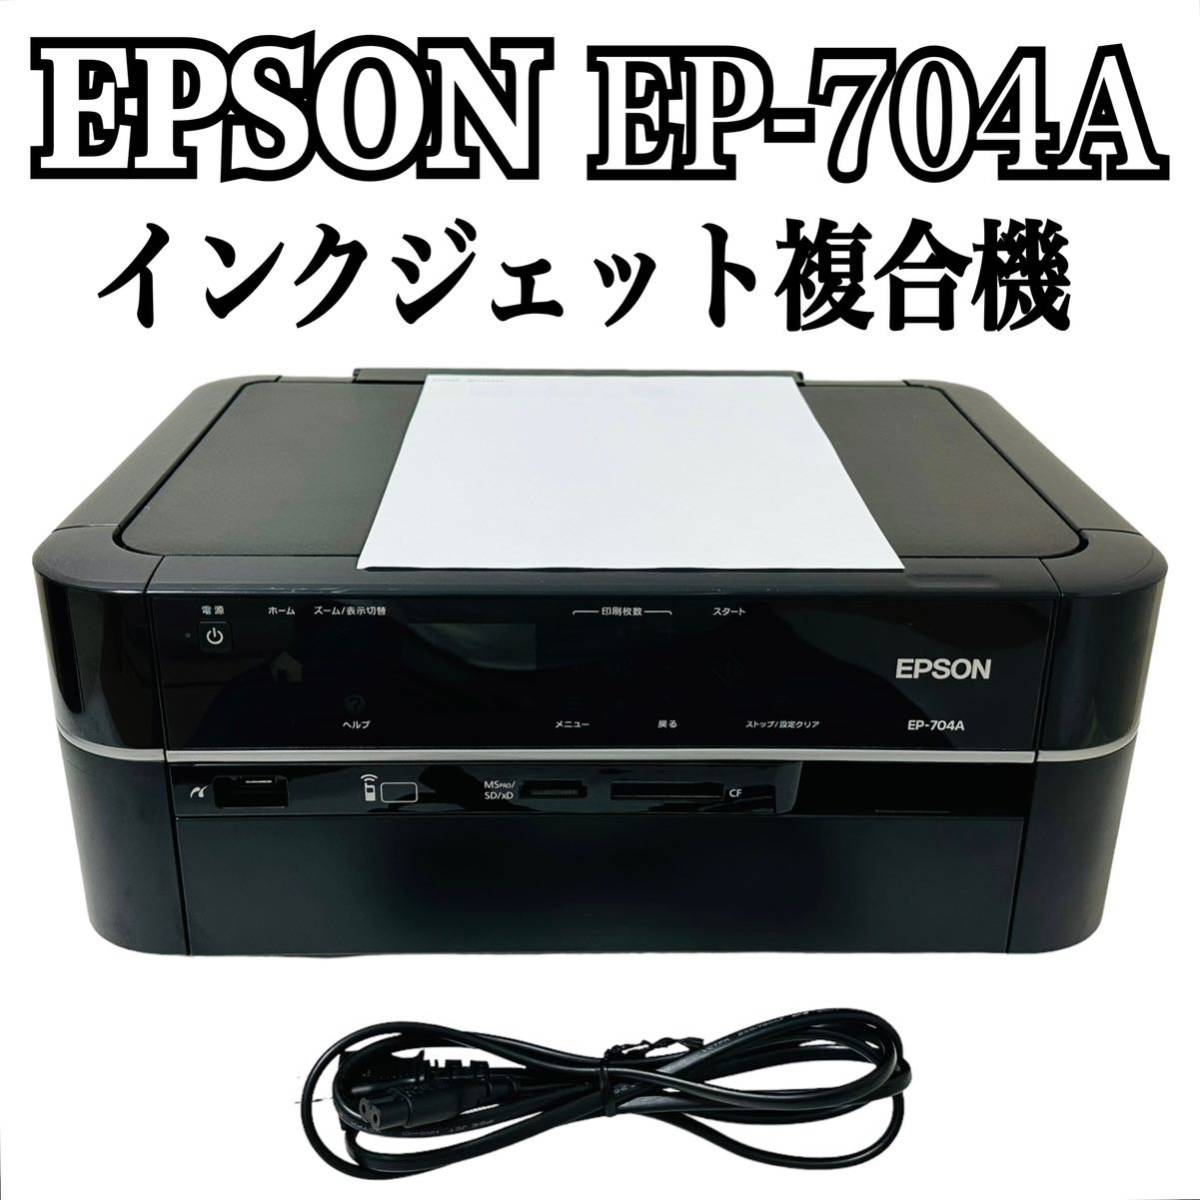 ★ 人気商品 ★ EPSON エプソン Colorio カラリオ インクジェット複合機 EP-704A プリンター 複合機 インクジェットプリンター_画像1